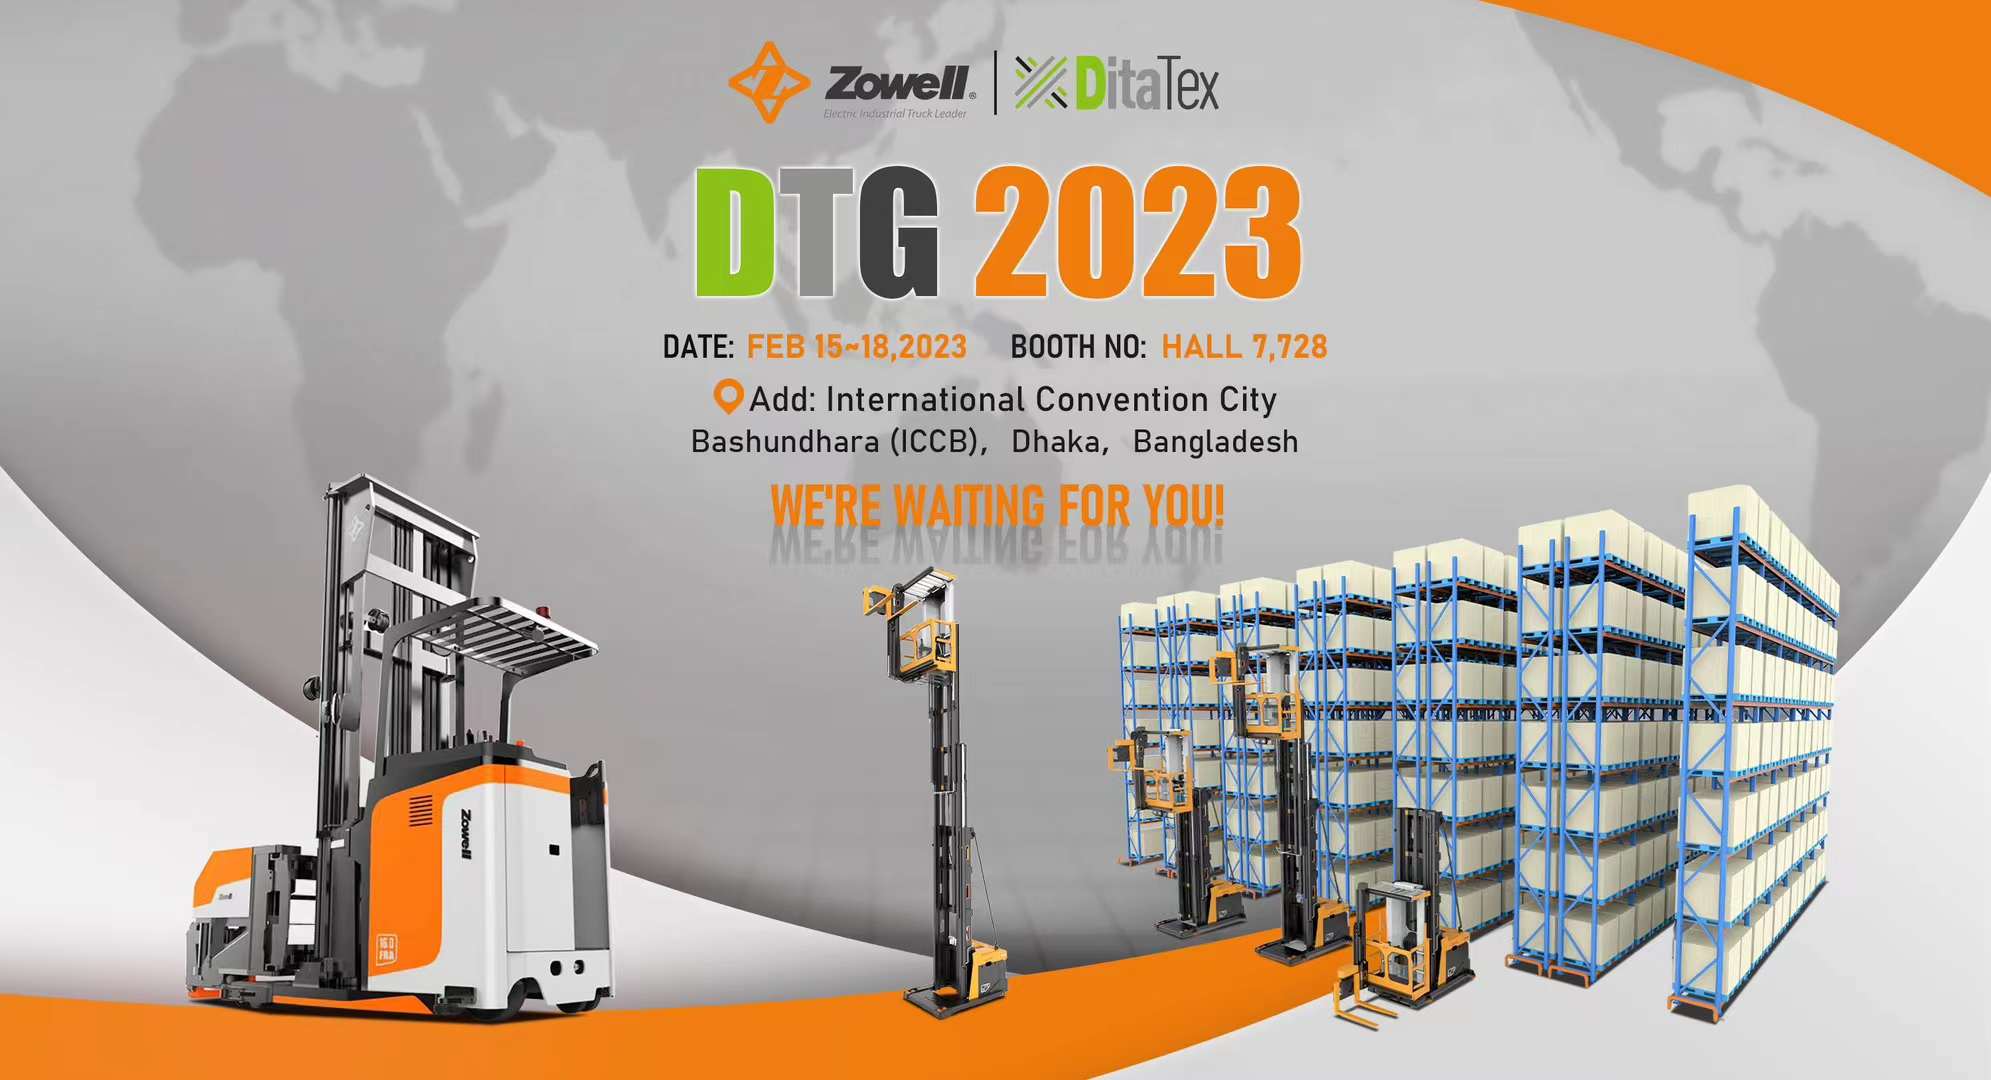 Triển lãm DTG 2023: Zowell và DitaTex tại Thành phố Hội nghị Quốc tế Bashundhara (ICCB) ở Bangladesh